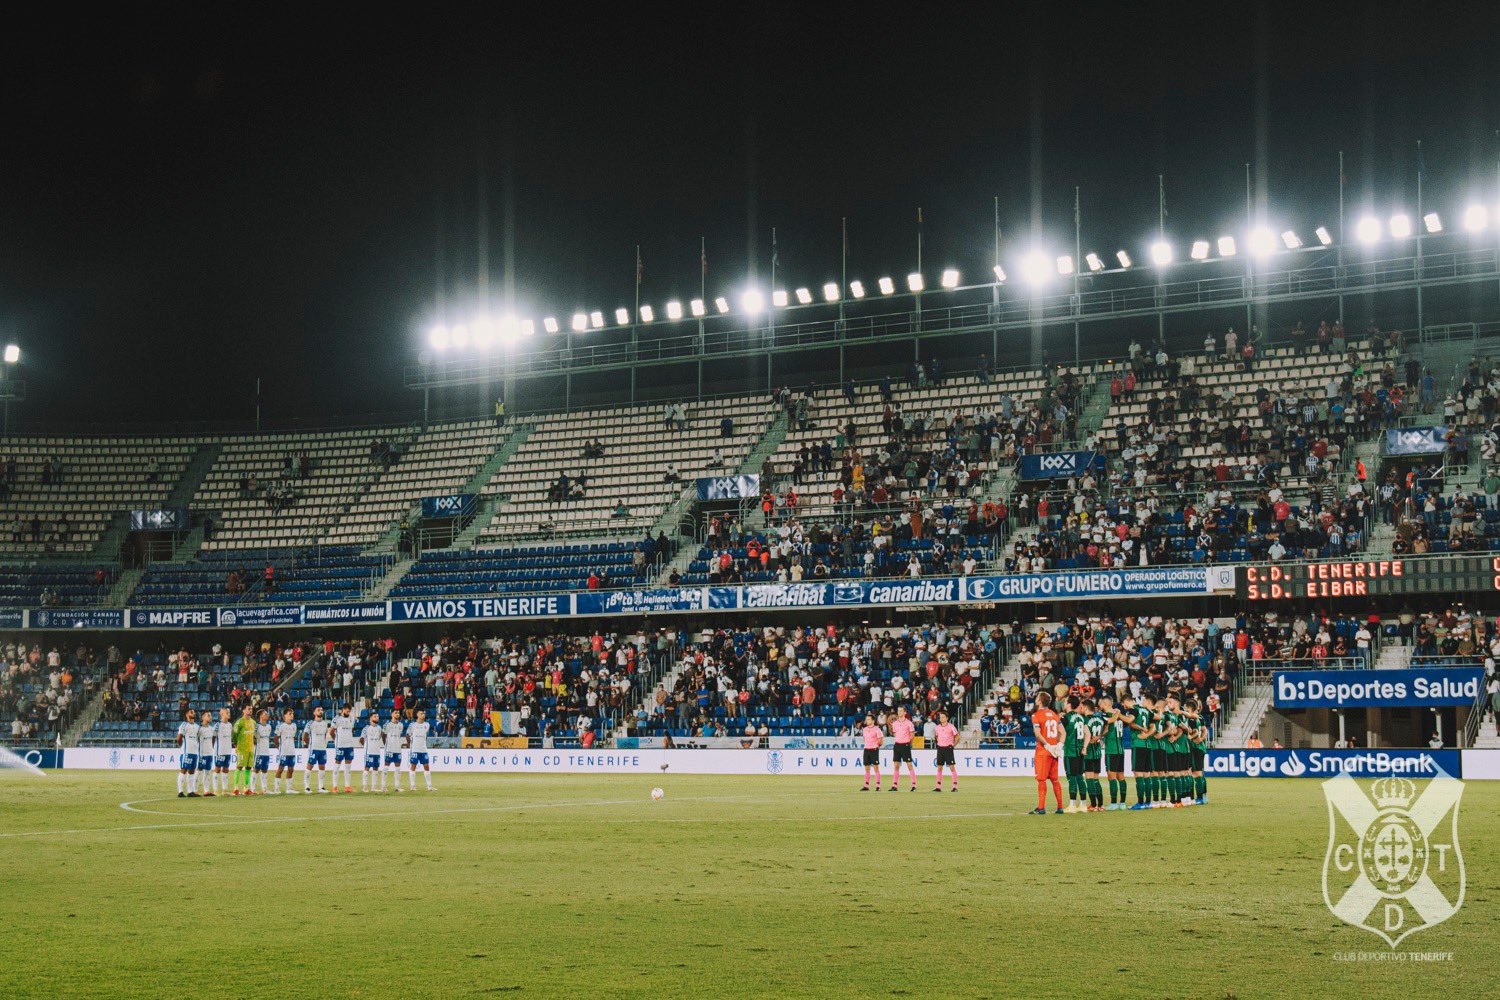 Los abonados entrarán gratis al partido de Copa del Rey entre Tenerife y Eibar